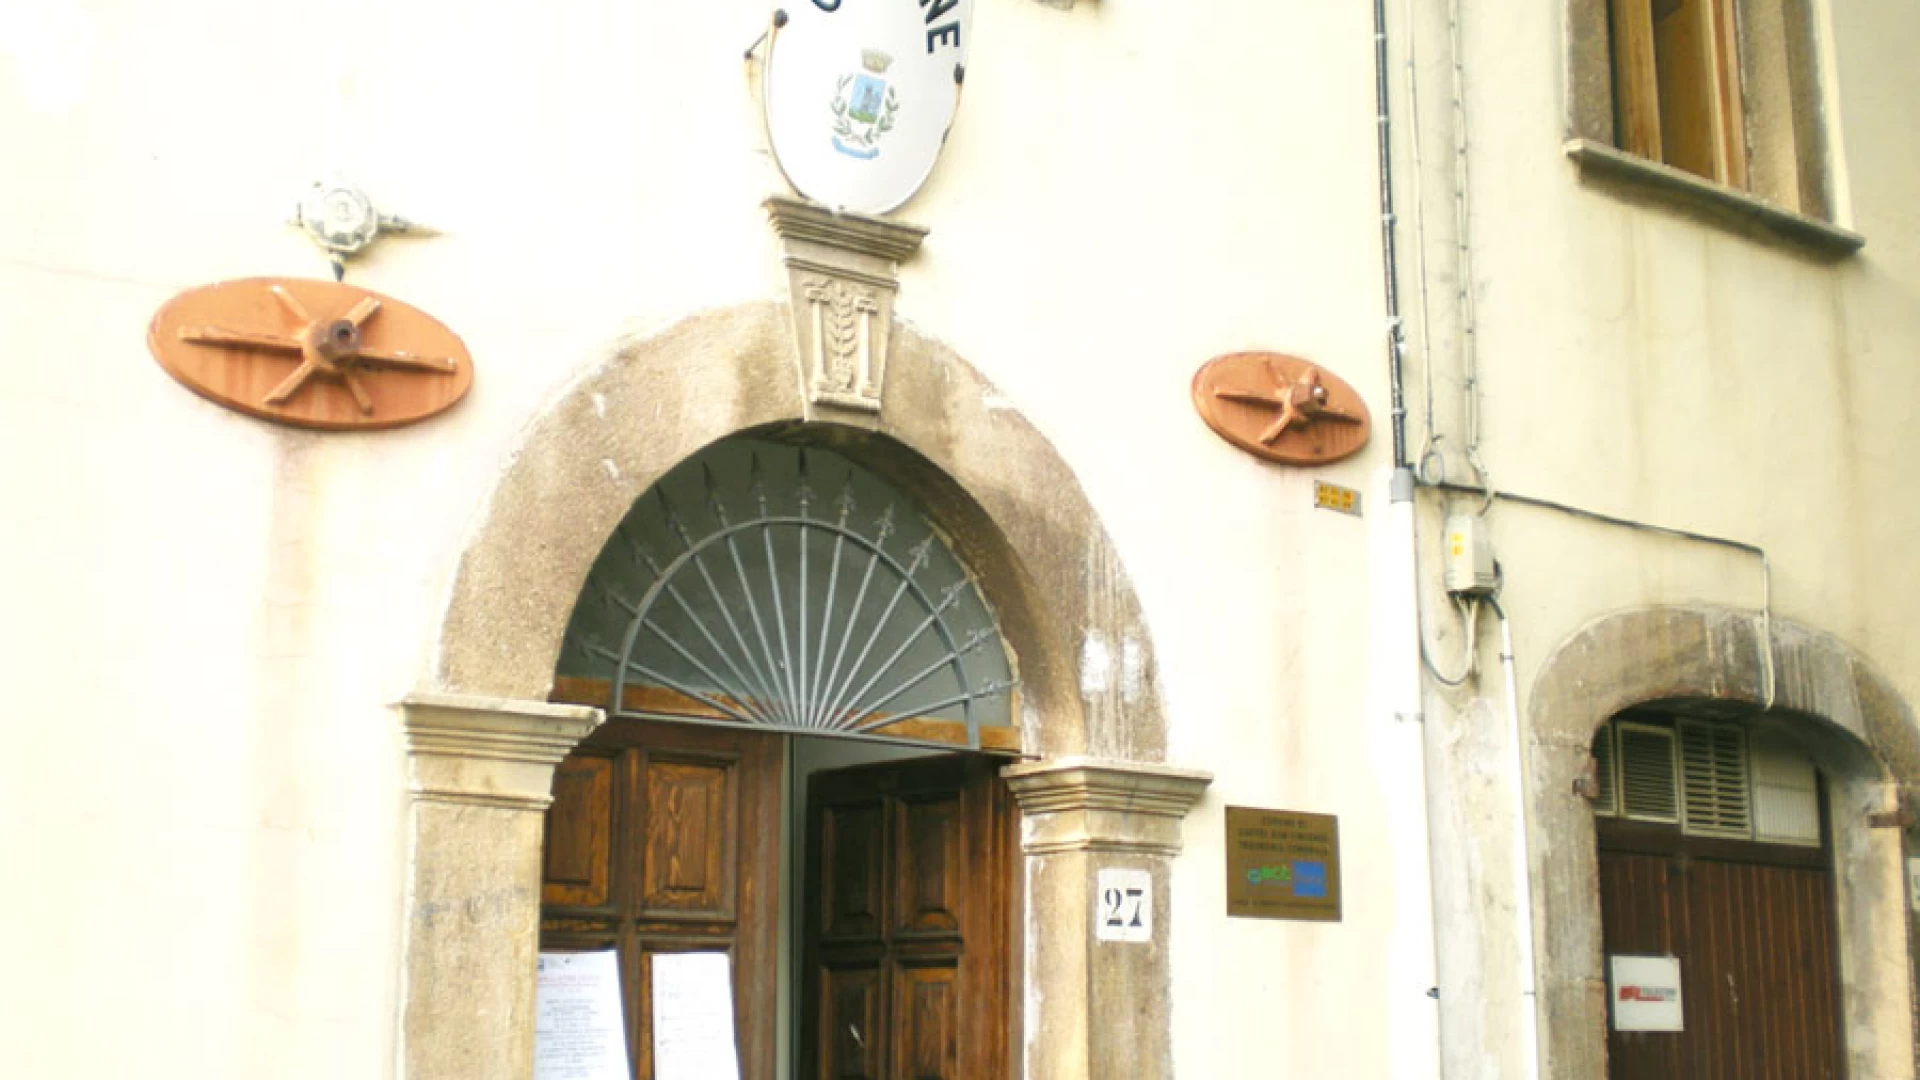 Messa in sicurezza degli edifici e del territorio, un milione di euro per il Comune di Castel San Vincenzo.